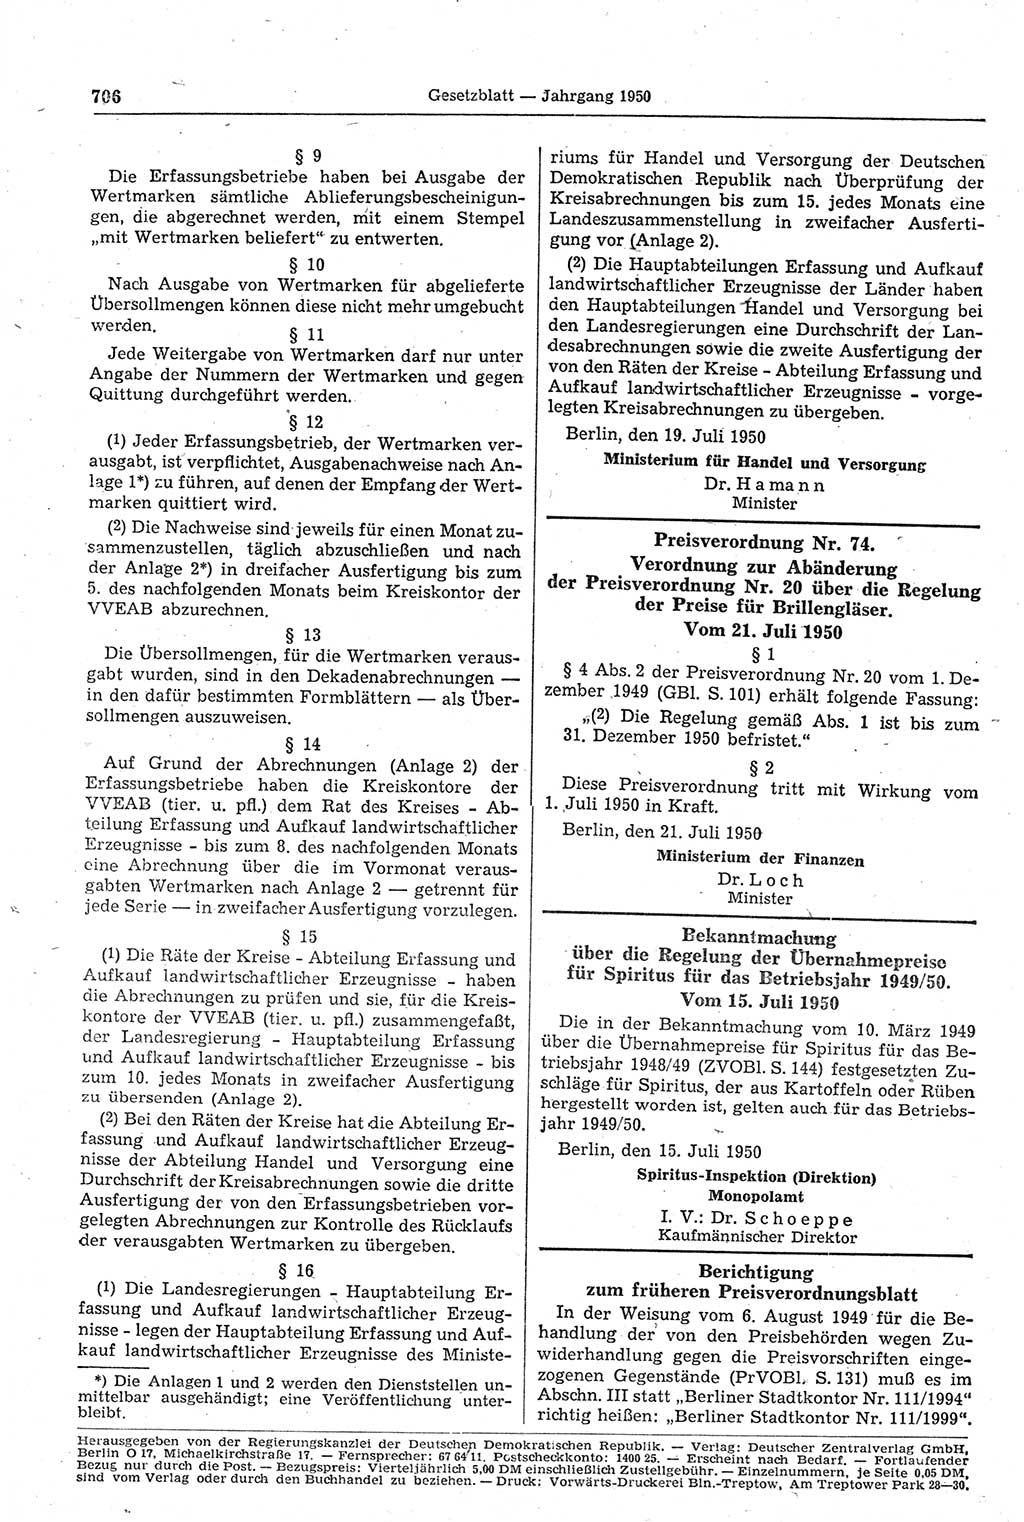 Gesetzblatt (GBl.) der Deutschen Demokratischen Republik (DDR) 1950, Seite 706 (GBl. DDR 1950, S. 706)